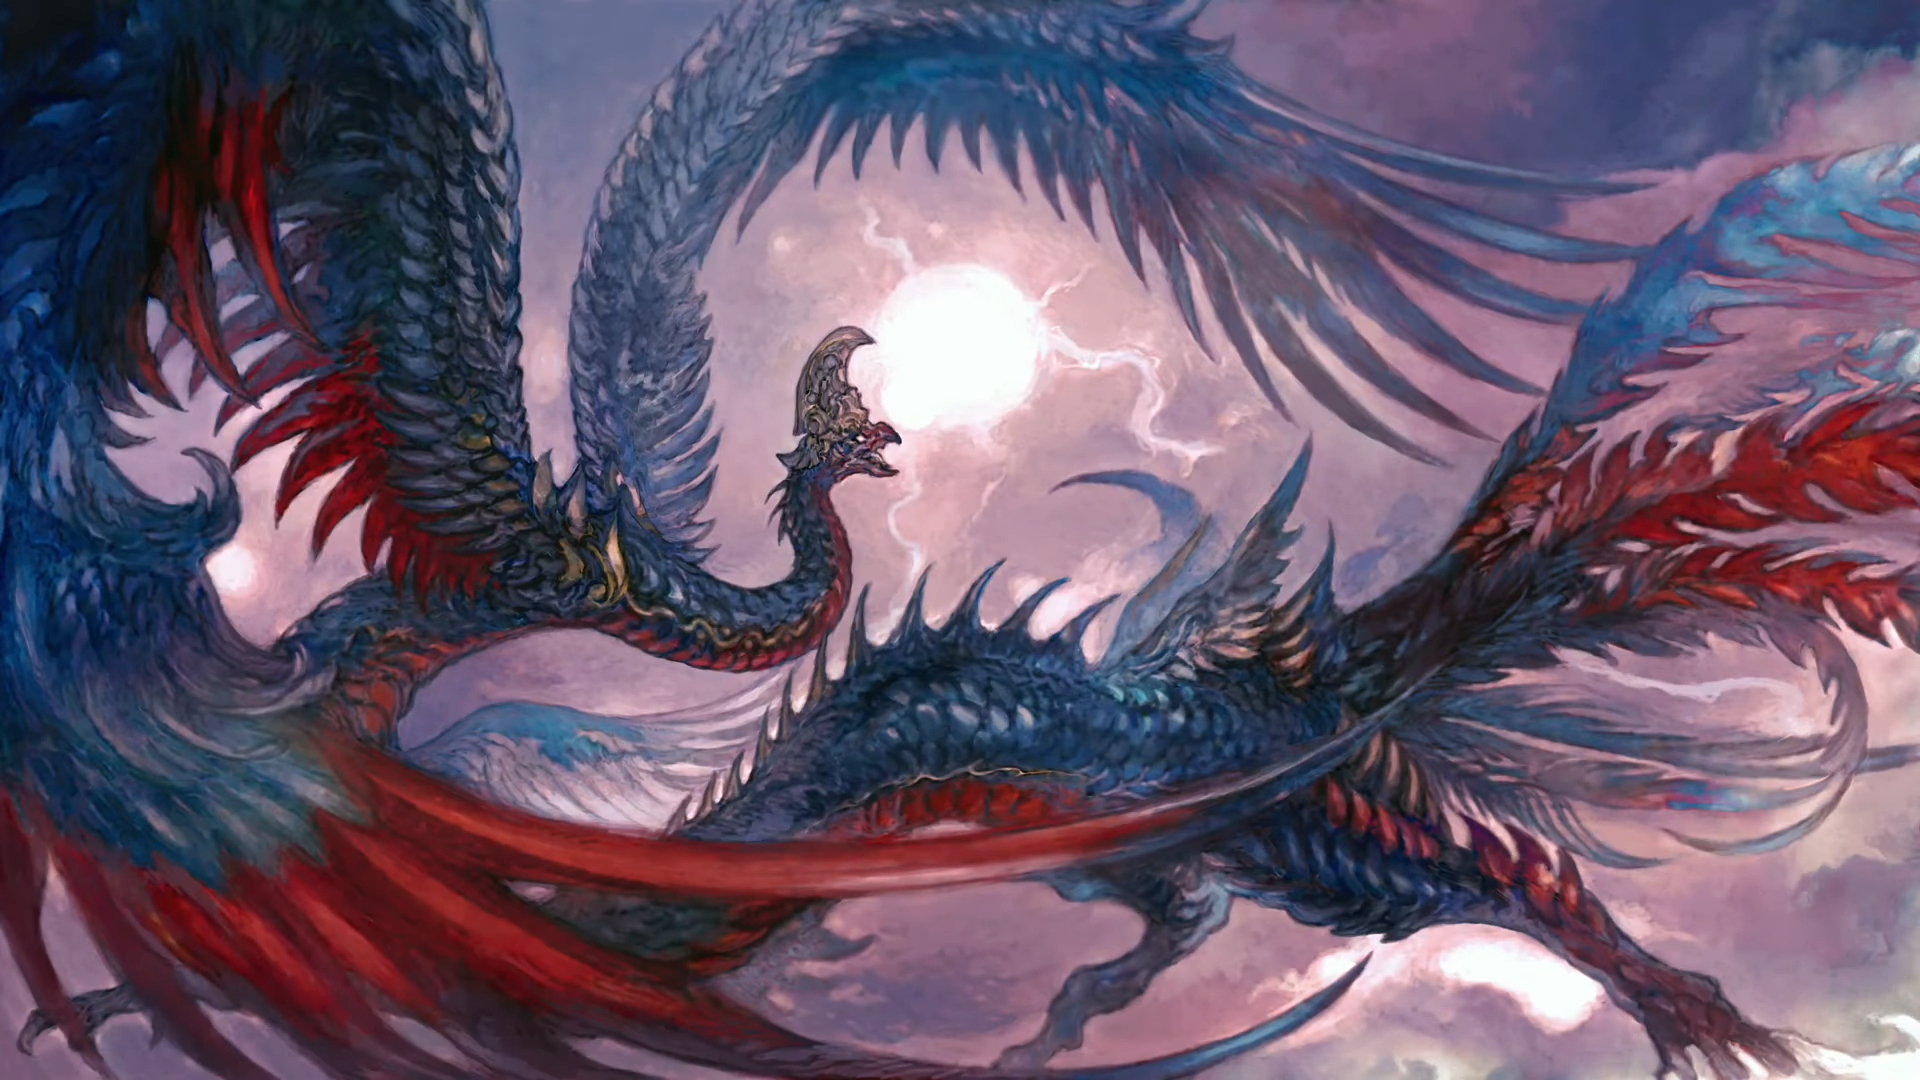 Una criatura parecida a un dragón azul y rojo vuela a través de un cielo gris púrpura